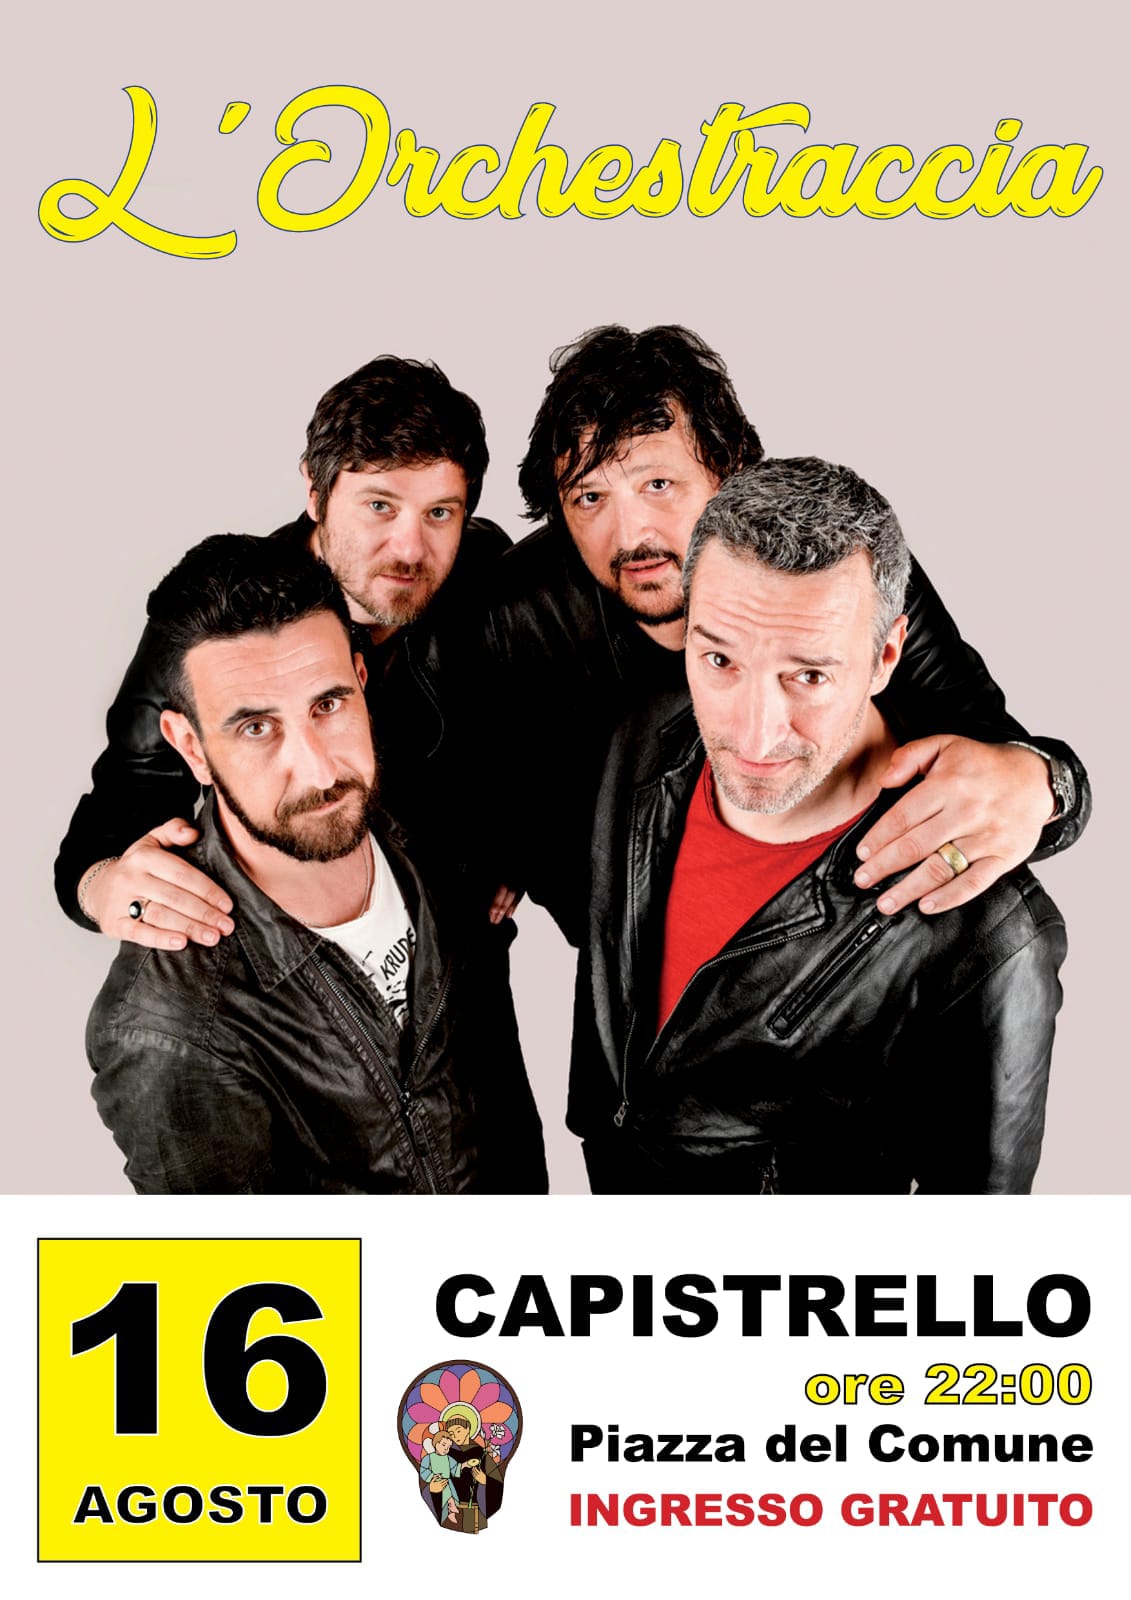 Musica e divertimento a Capistrello con l'Orchestraccia, la band romana che porta allegria sui palchi di tutta Italia